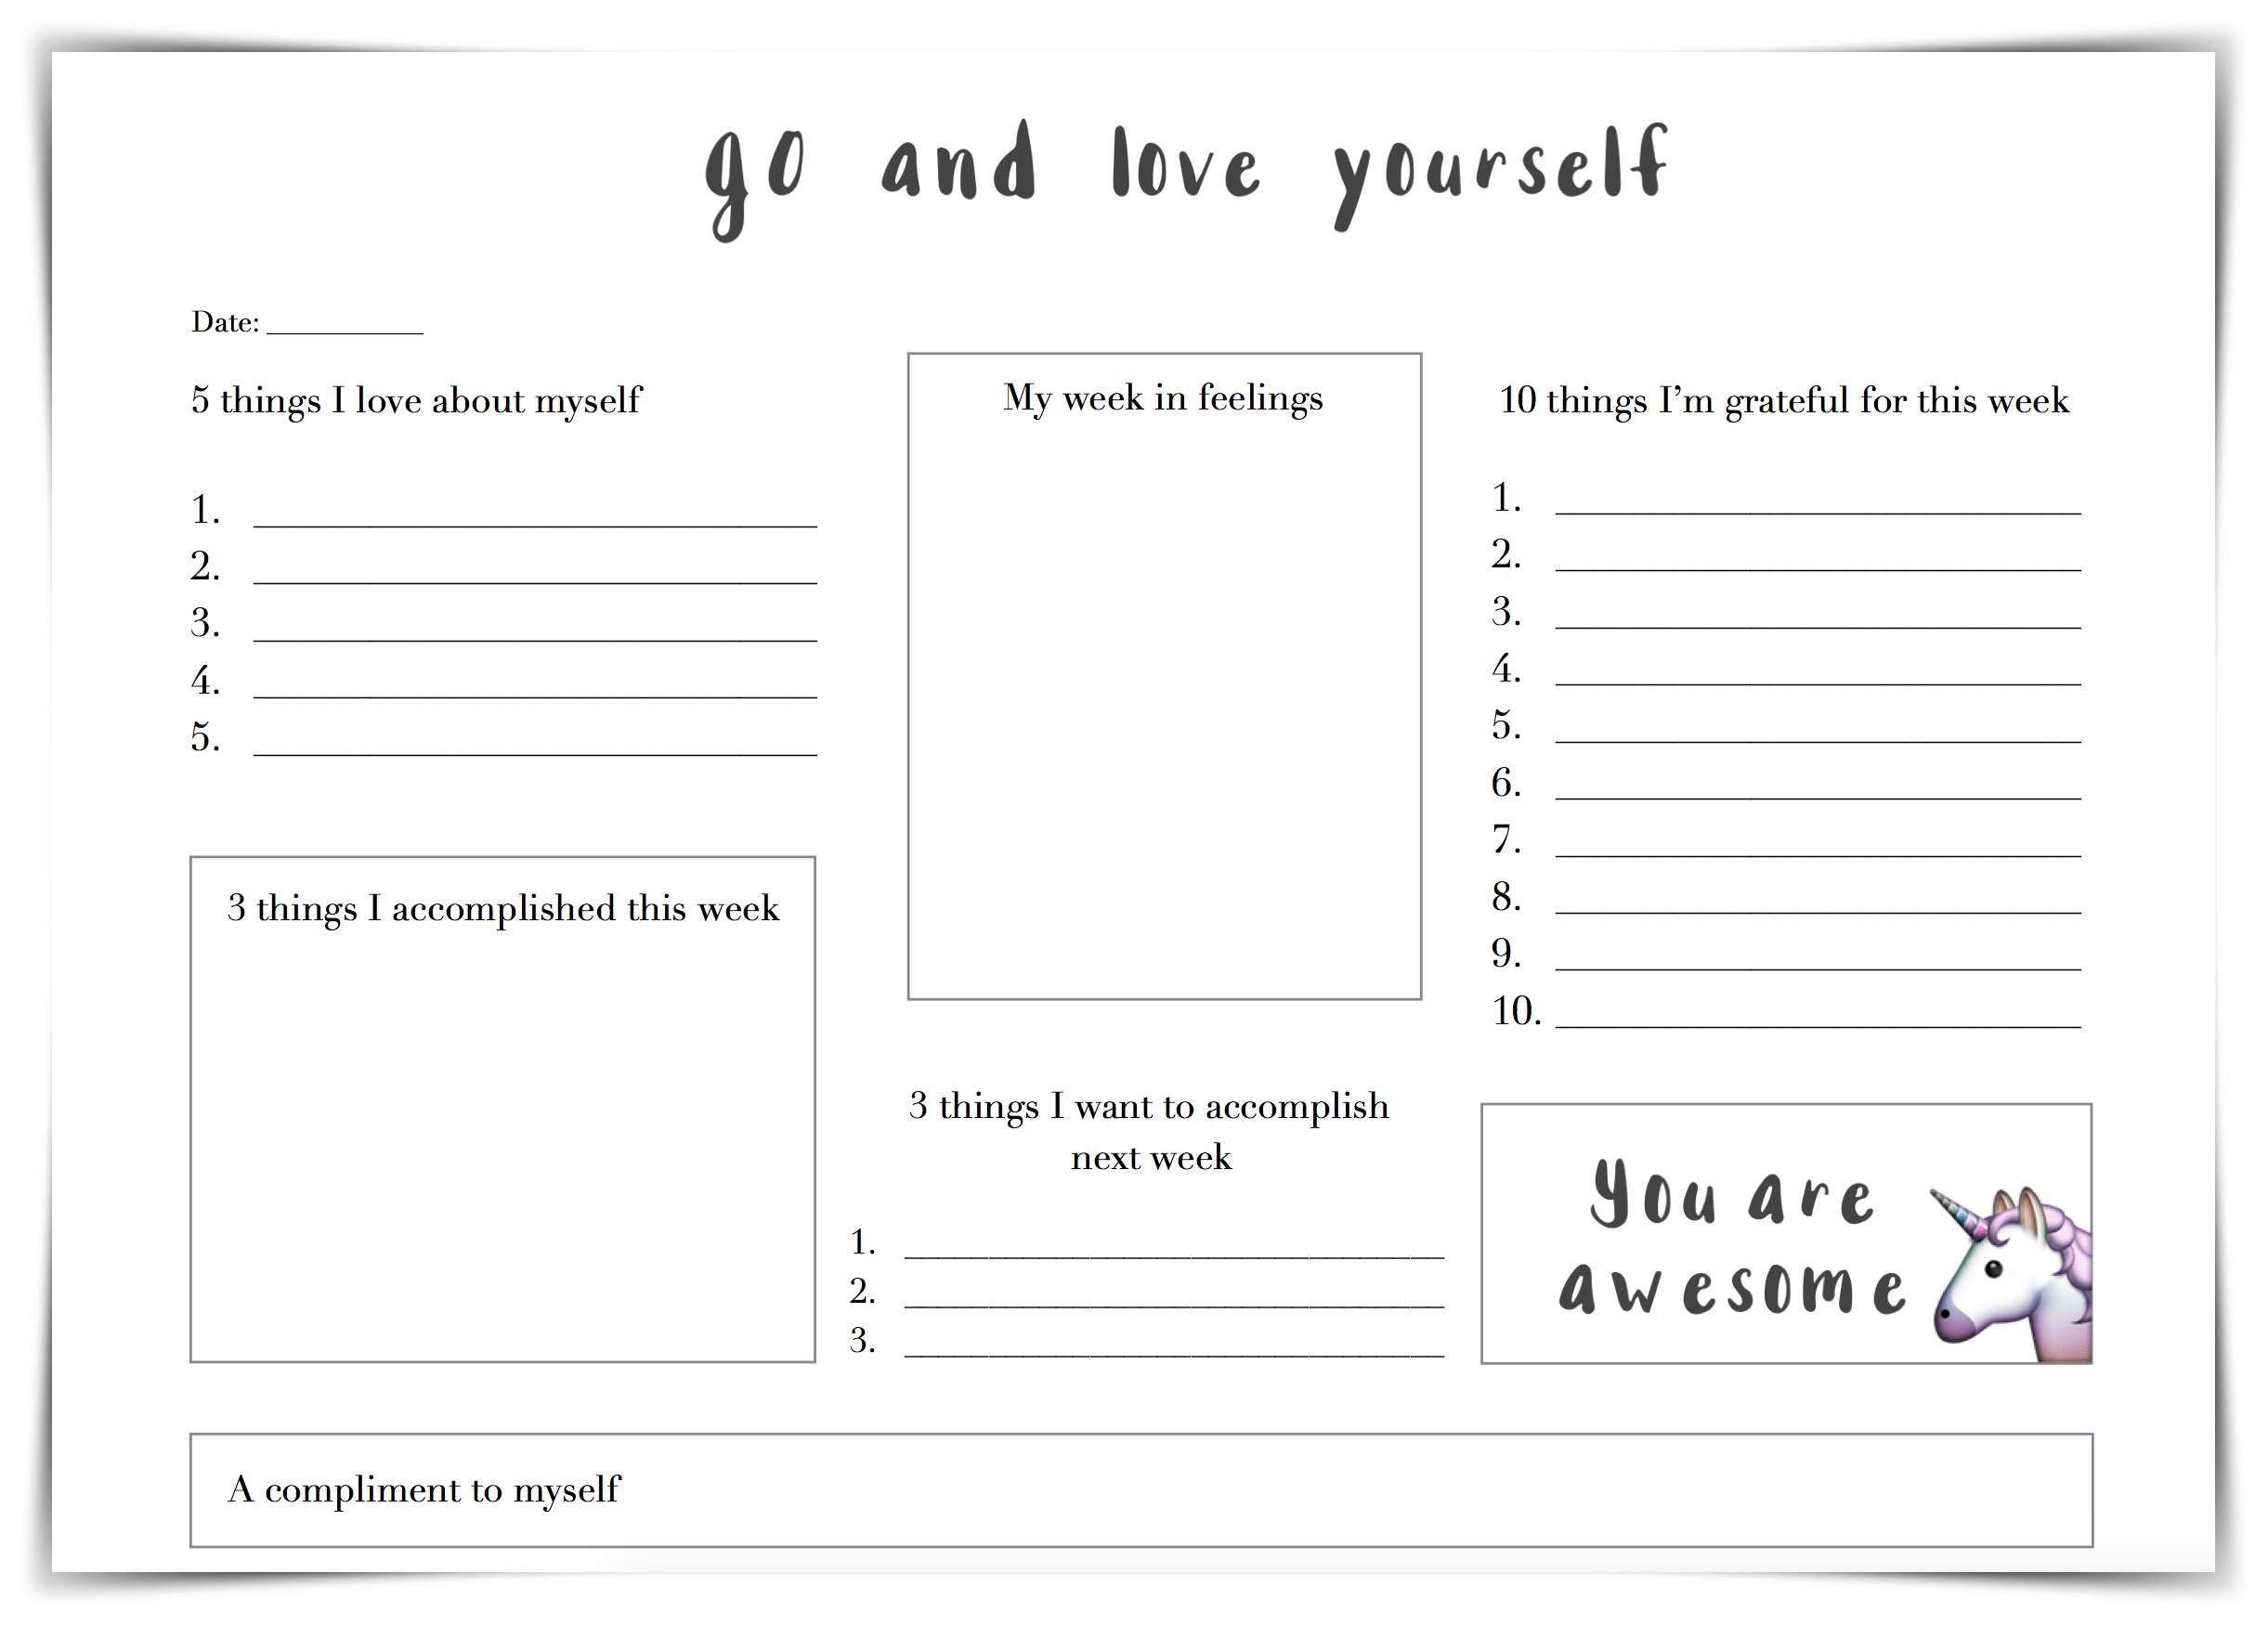 Printable Self Esteem Worksheets For Teenagers Printable Worksheets